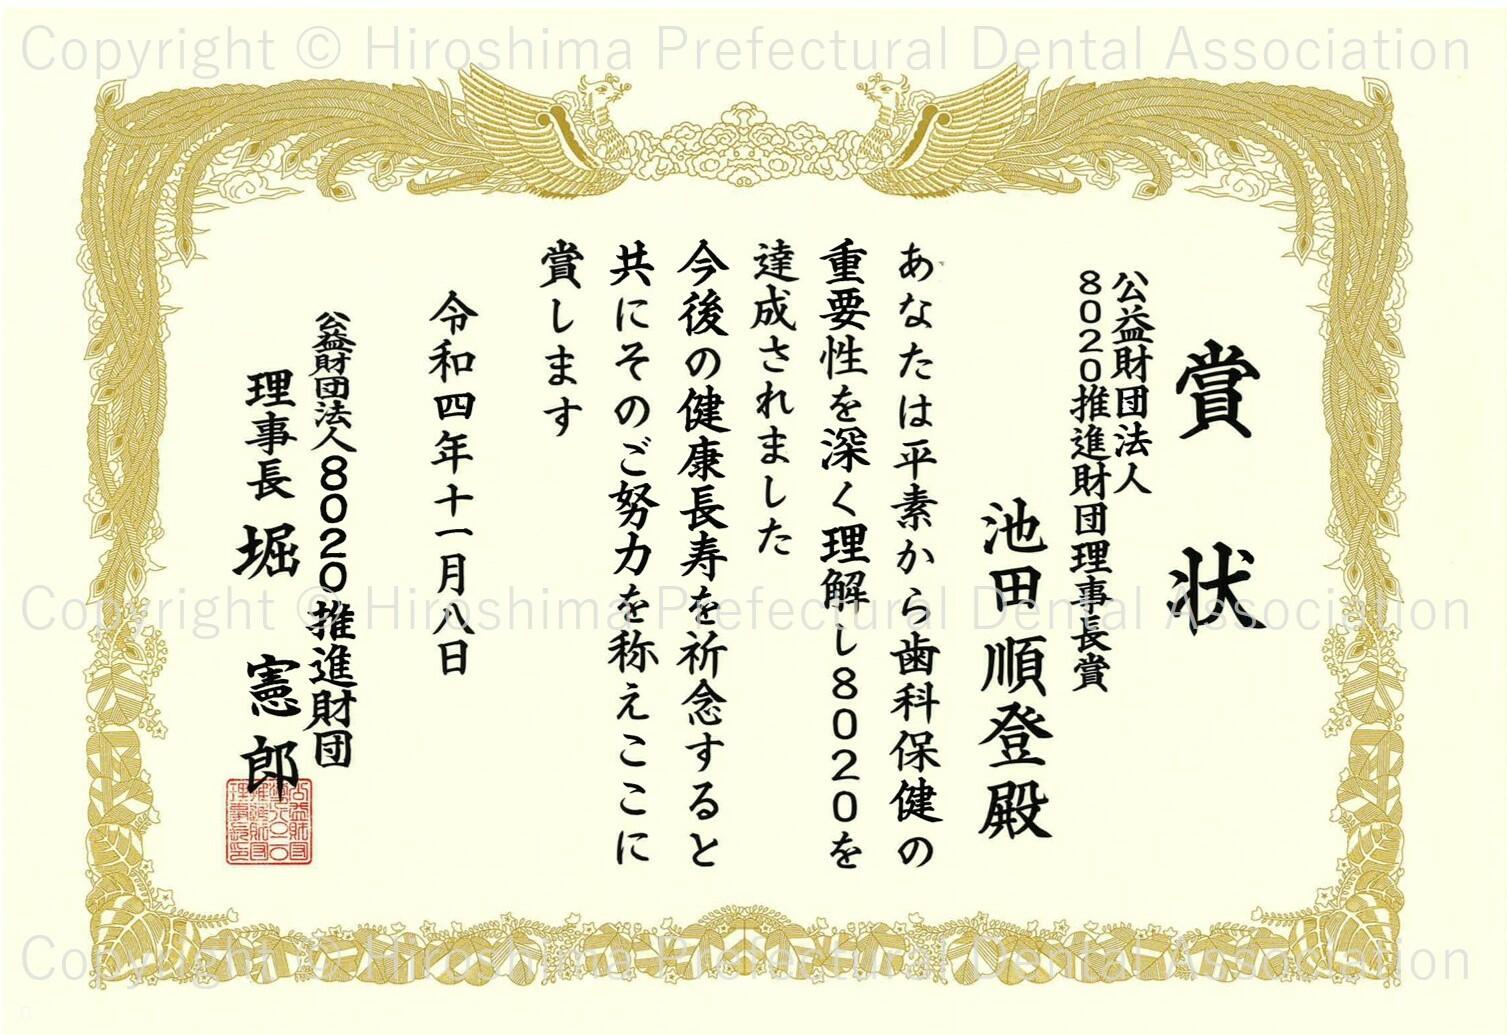 certificate_03